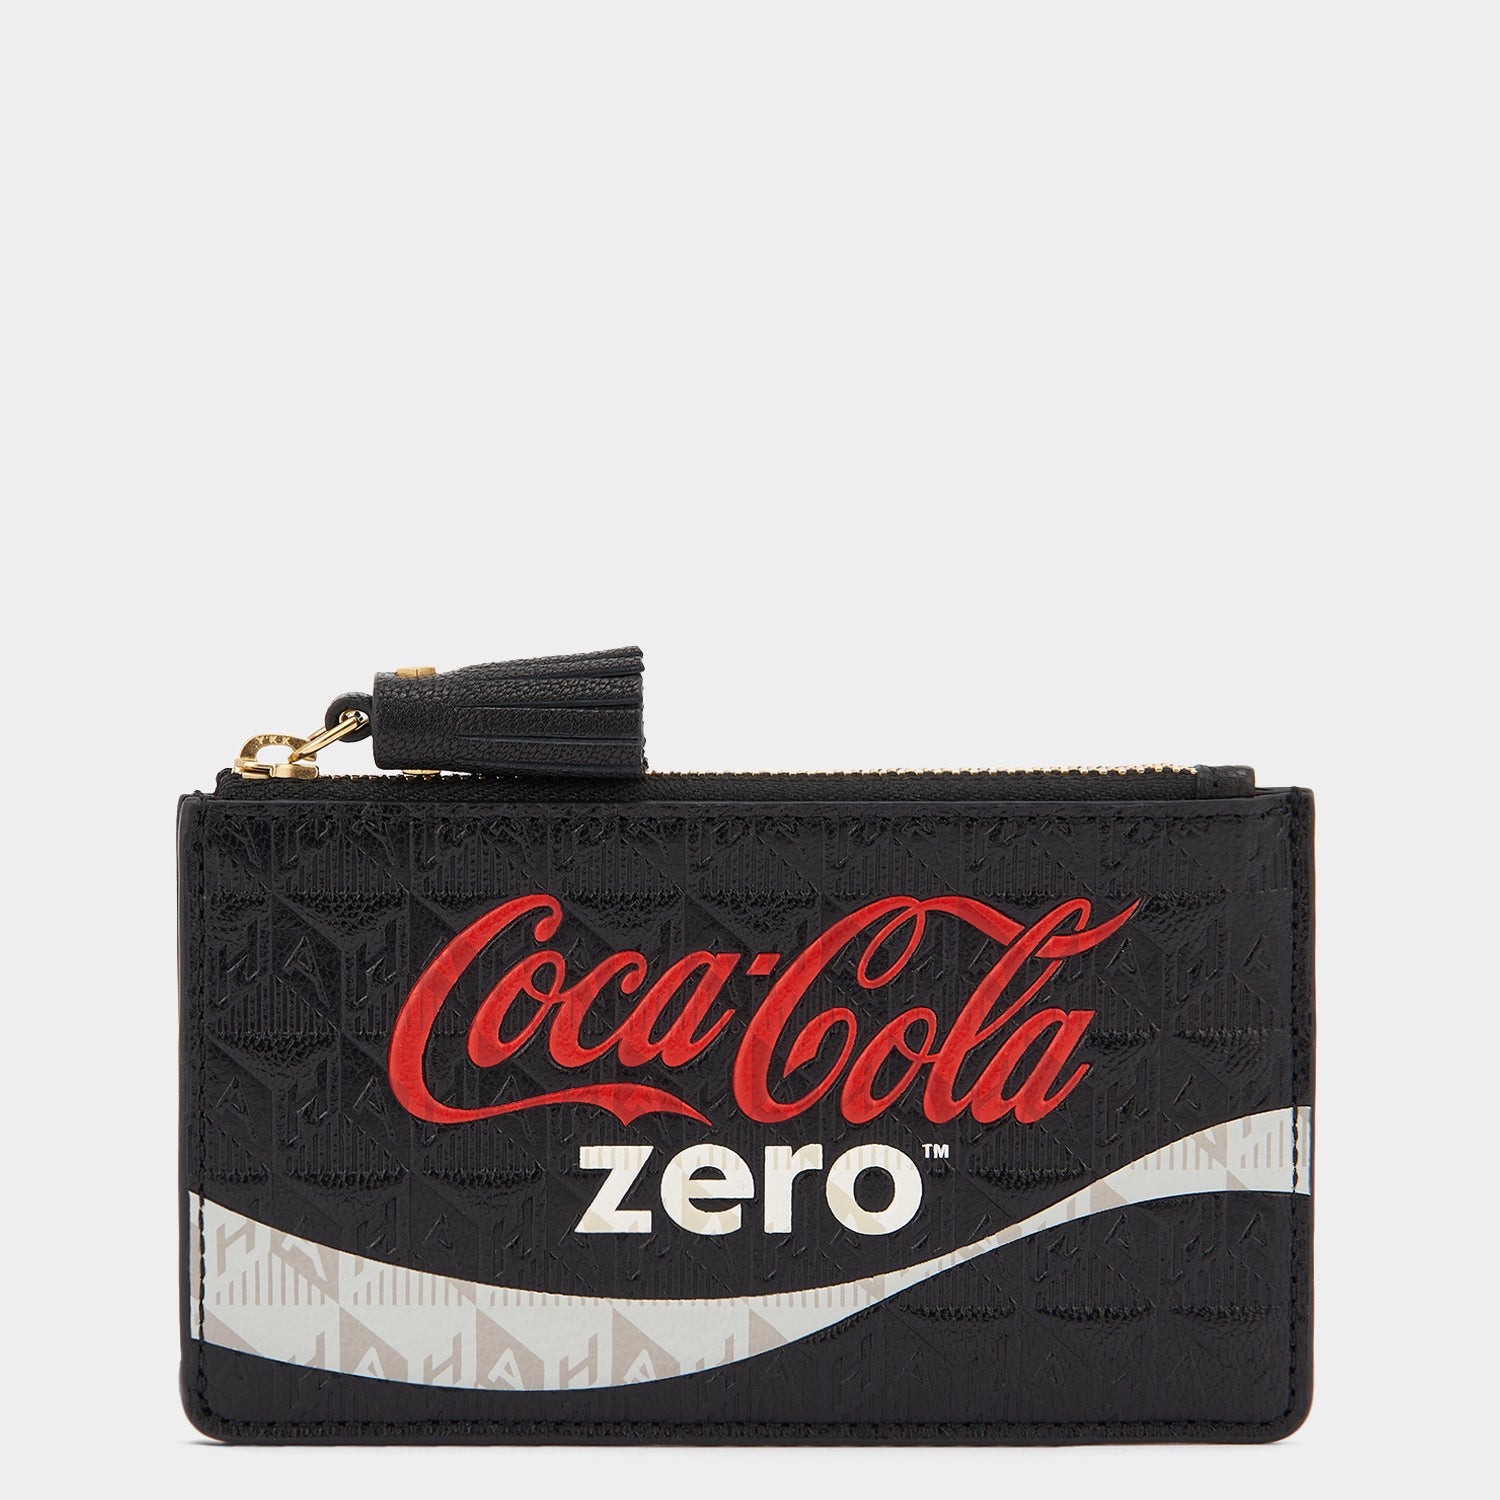 「Coca Cola Zero」ジップカードケース